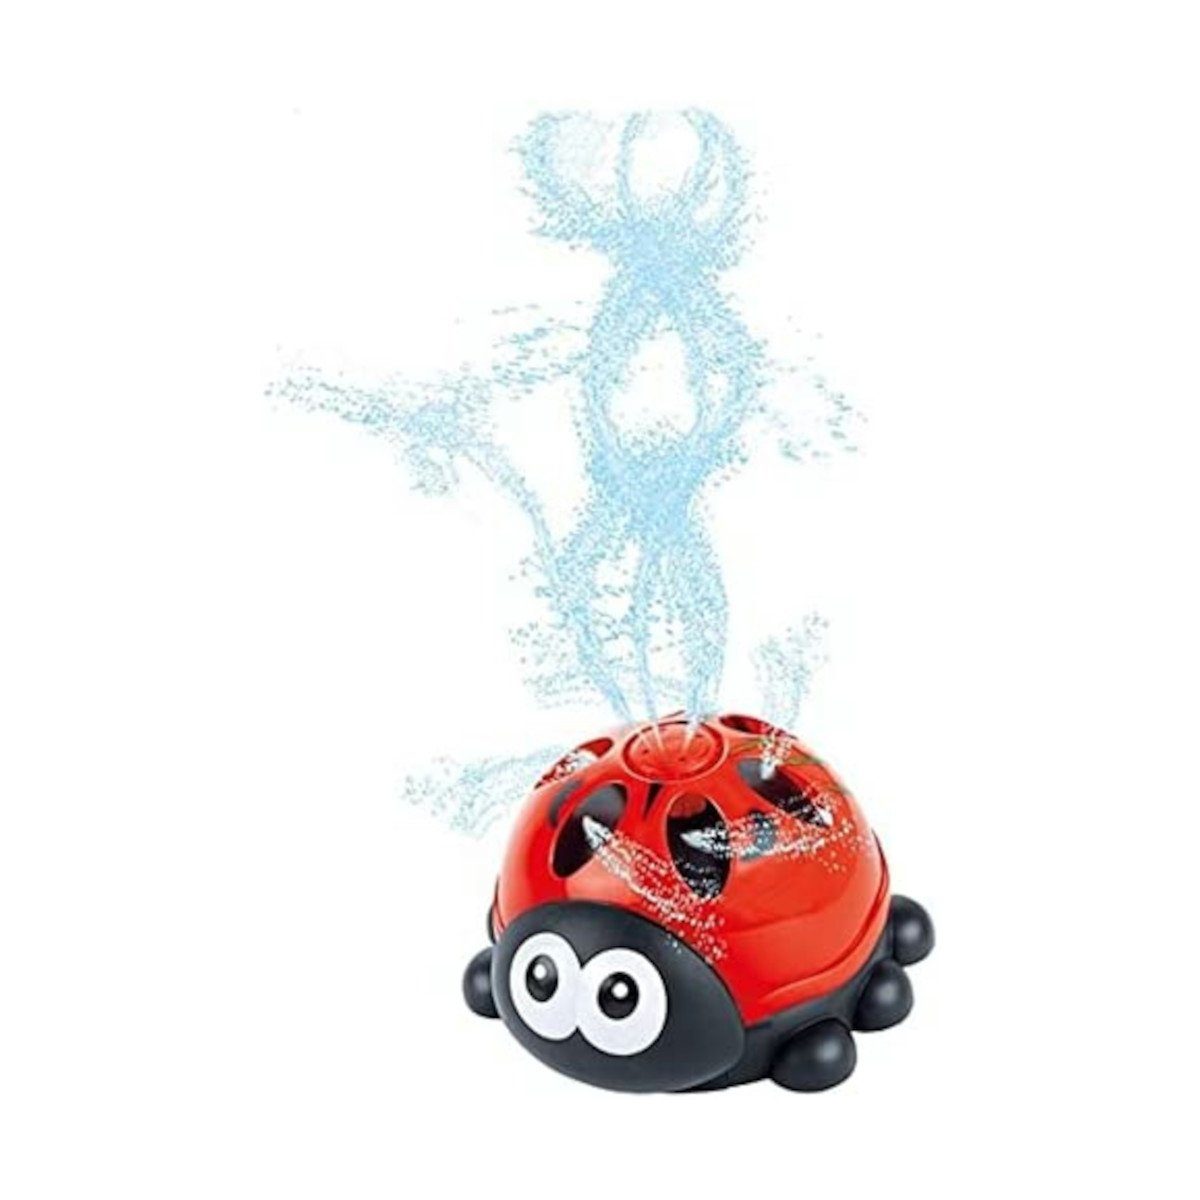 Toi-Toys Spiel-Wassersprenkler SPLASH Wassersprinkler - Marienkäfer, mit Universalanschluss für Gartenschläuche